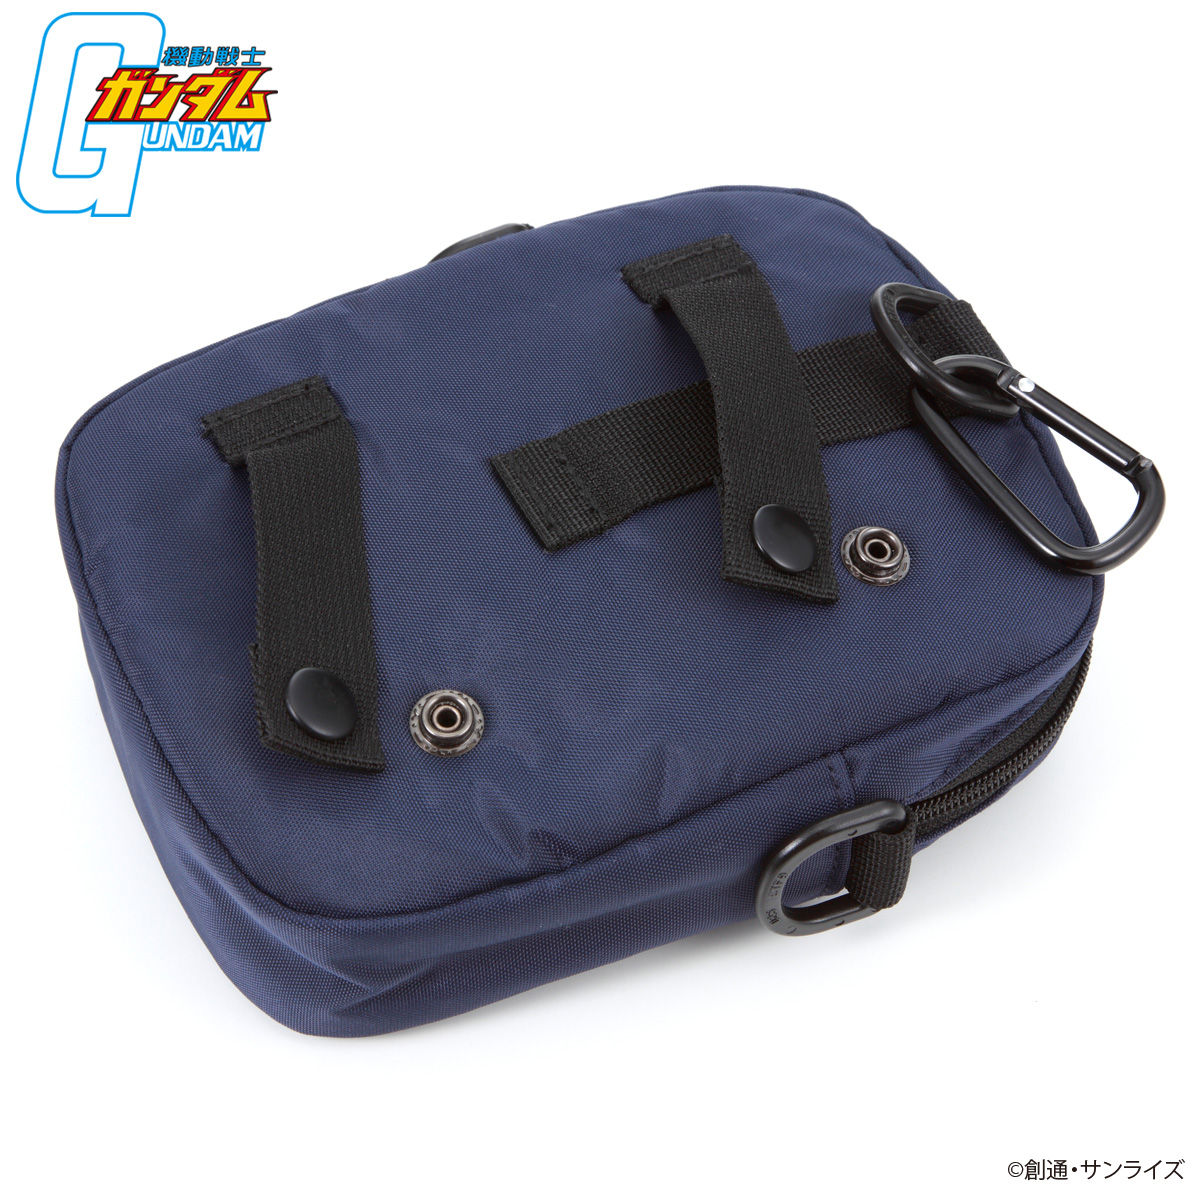 Mobile Suit Gundam Shoulder Bag